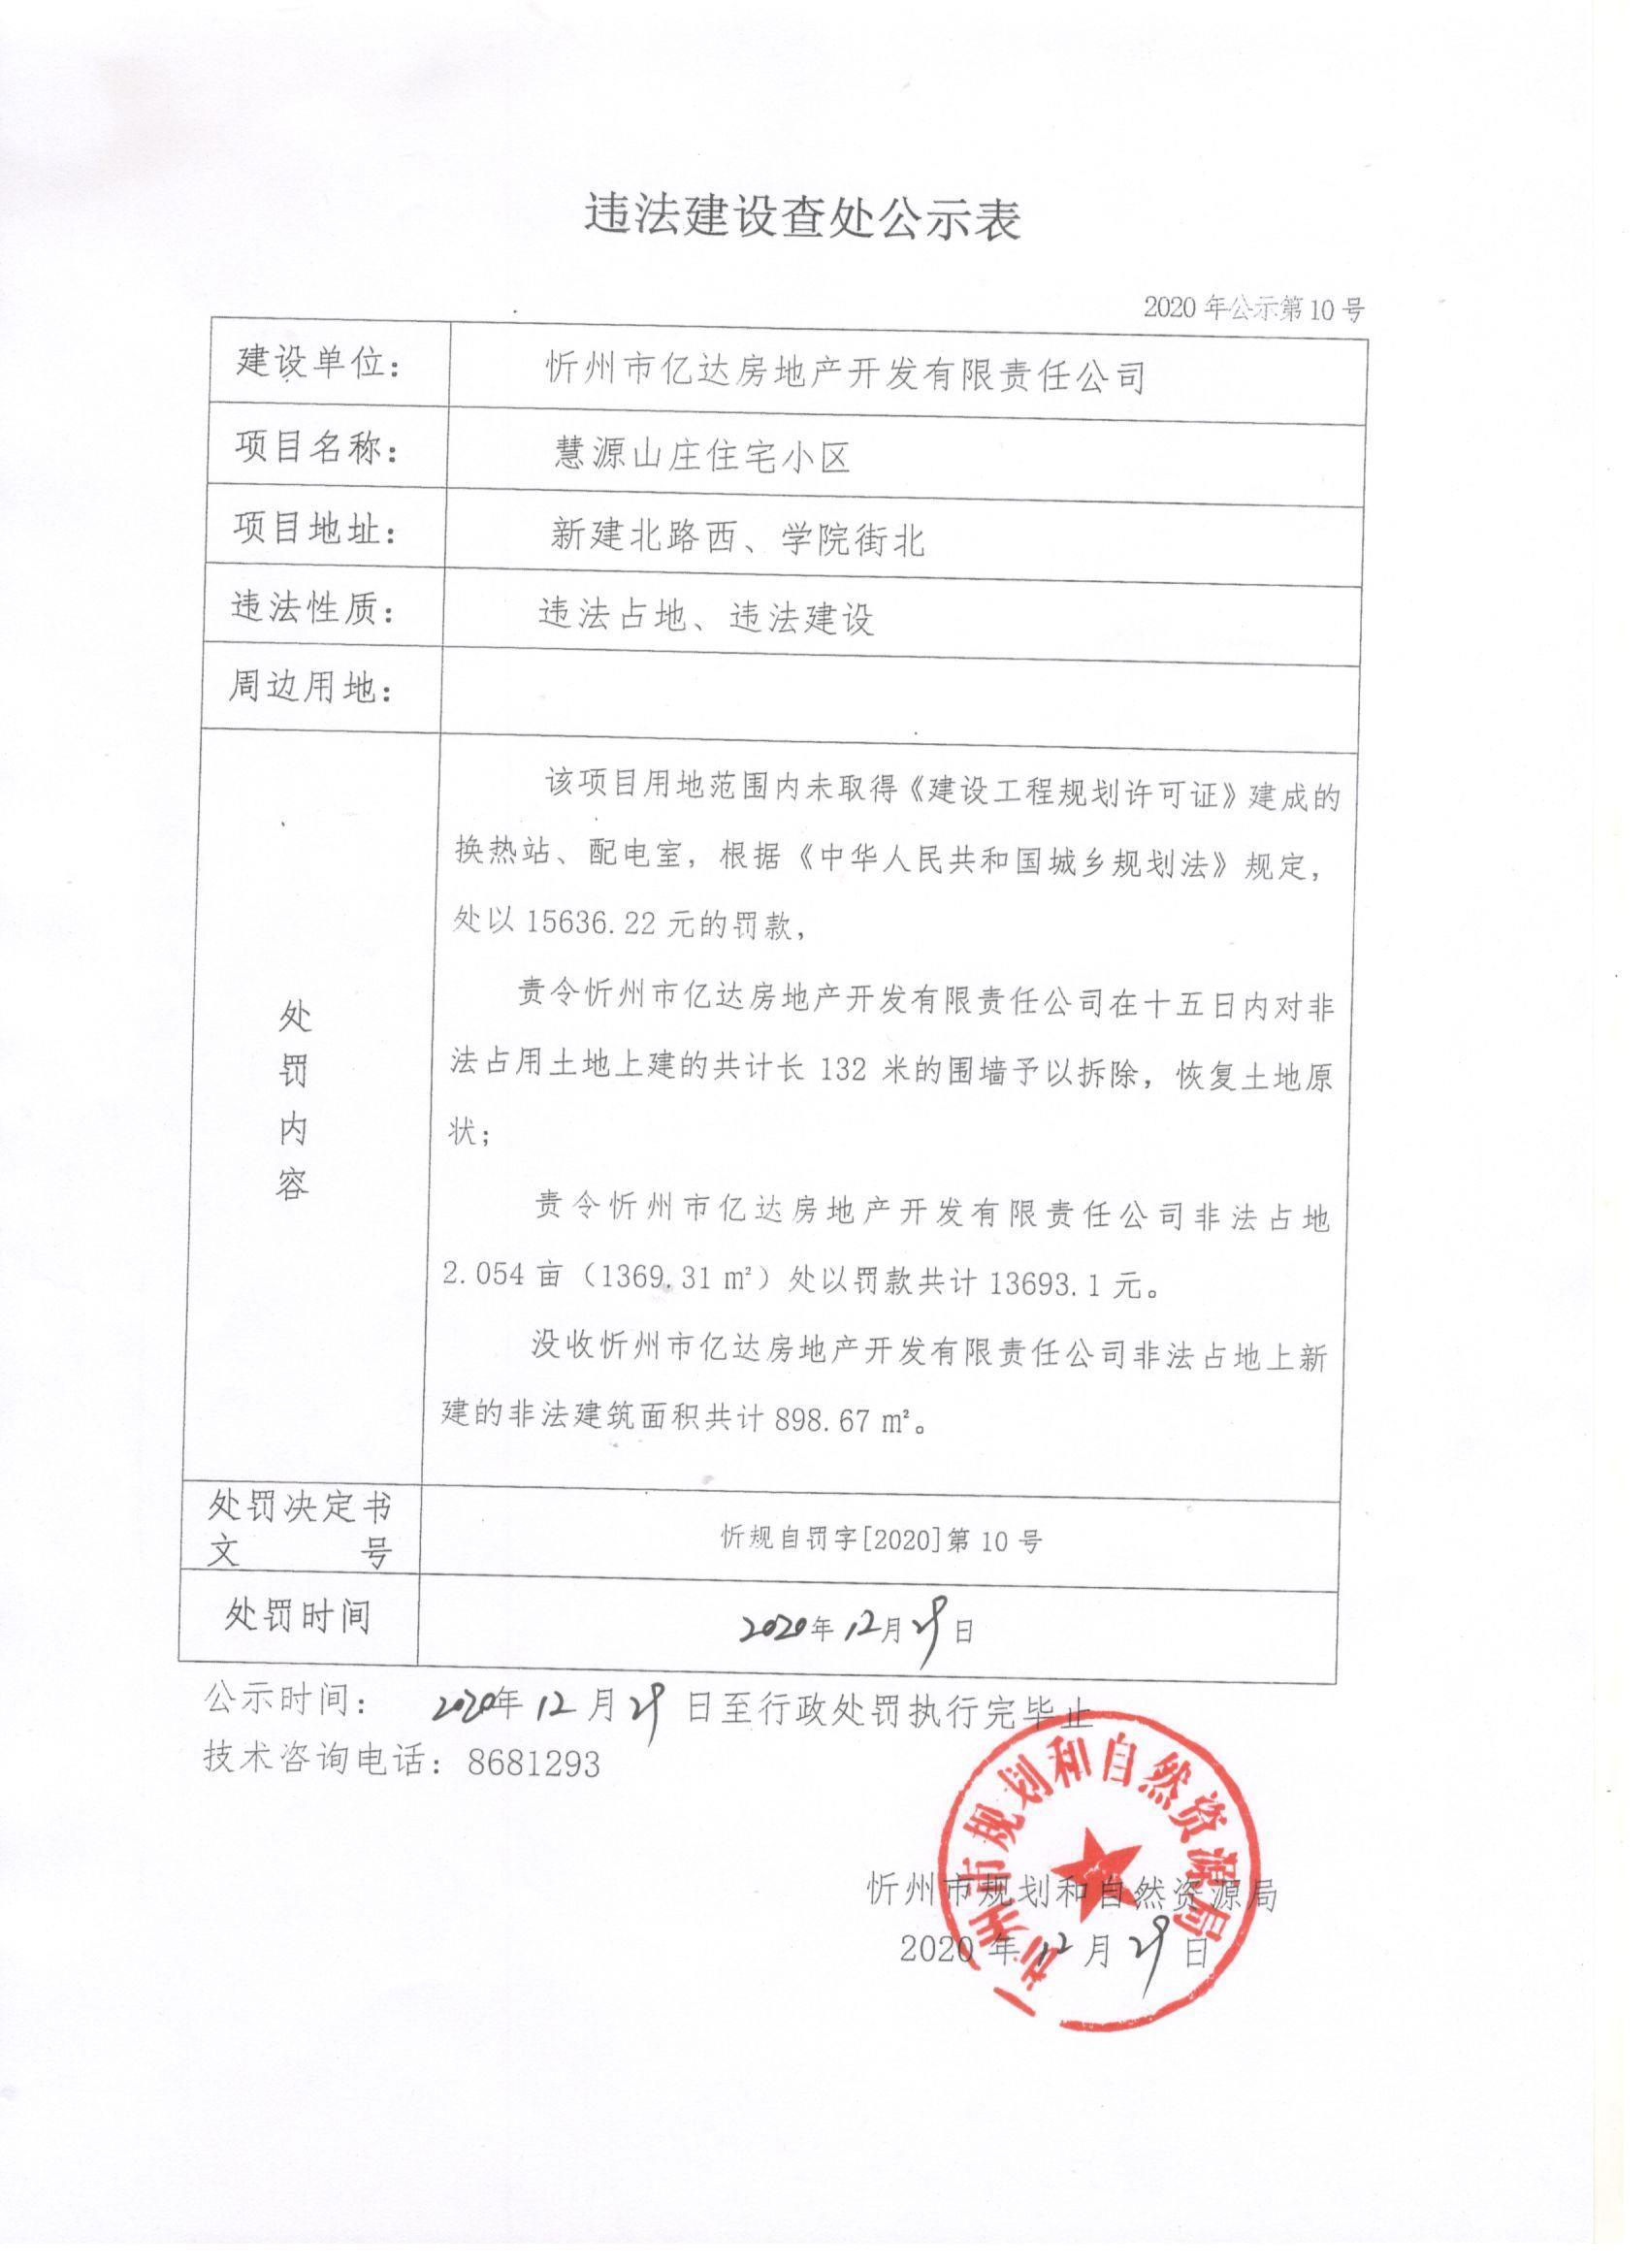 罚款、拆除、没收…… 忻州亿达房地产开发公司违法占地建设受重罚